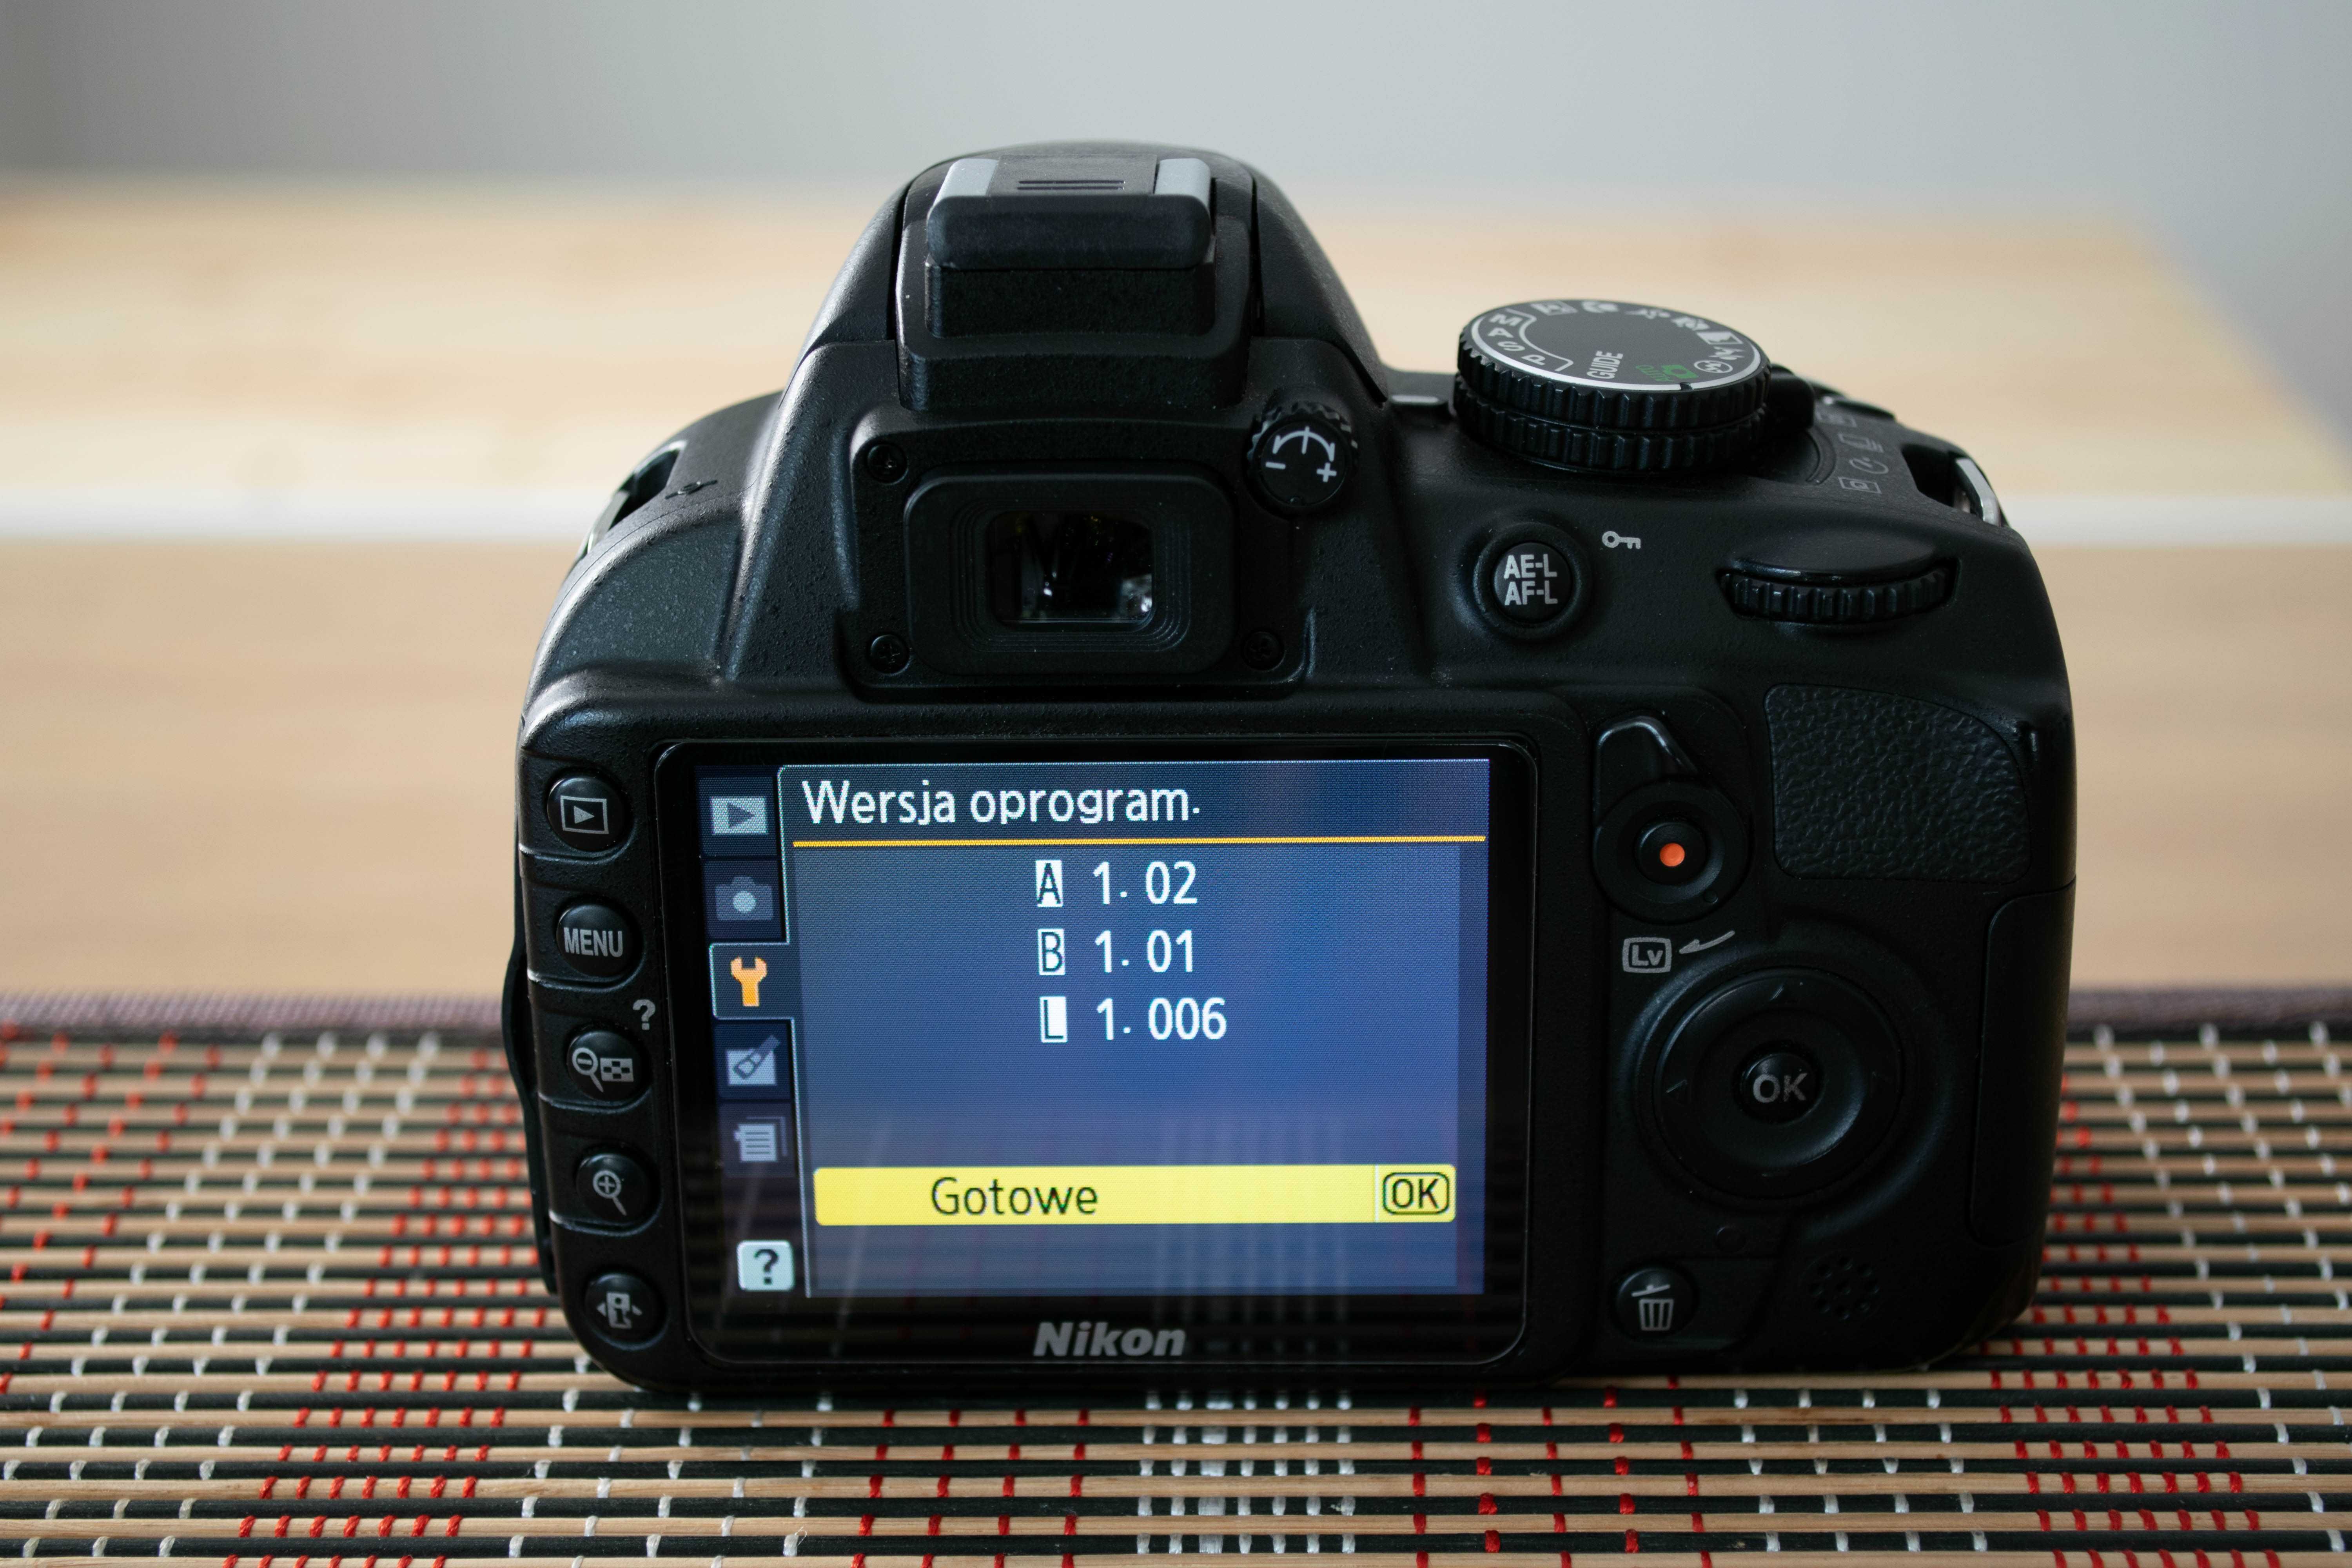 Lustrzanka Nikon D3100,  bardzo mały przebieg 3254 zdjęć